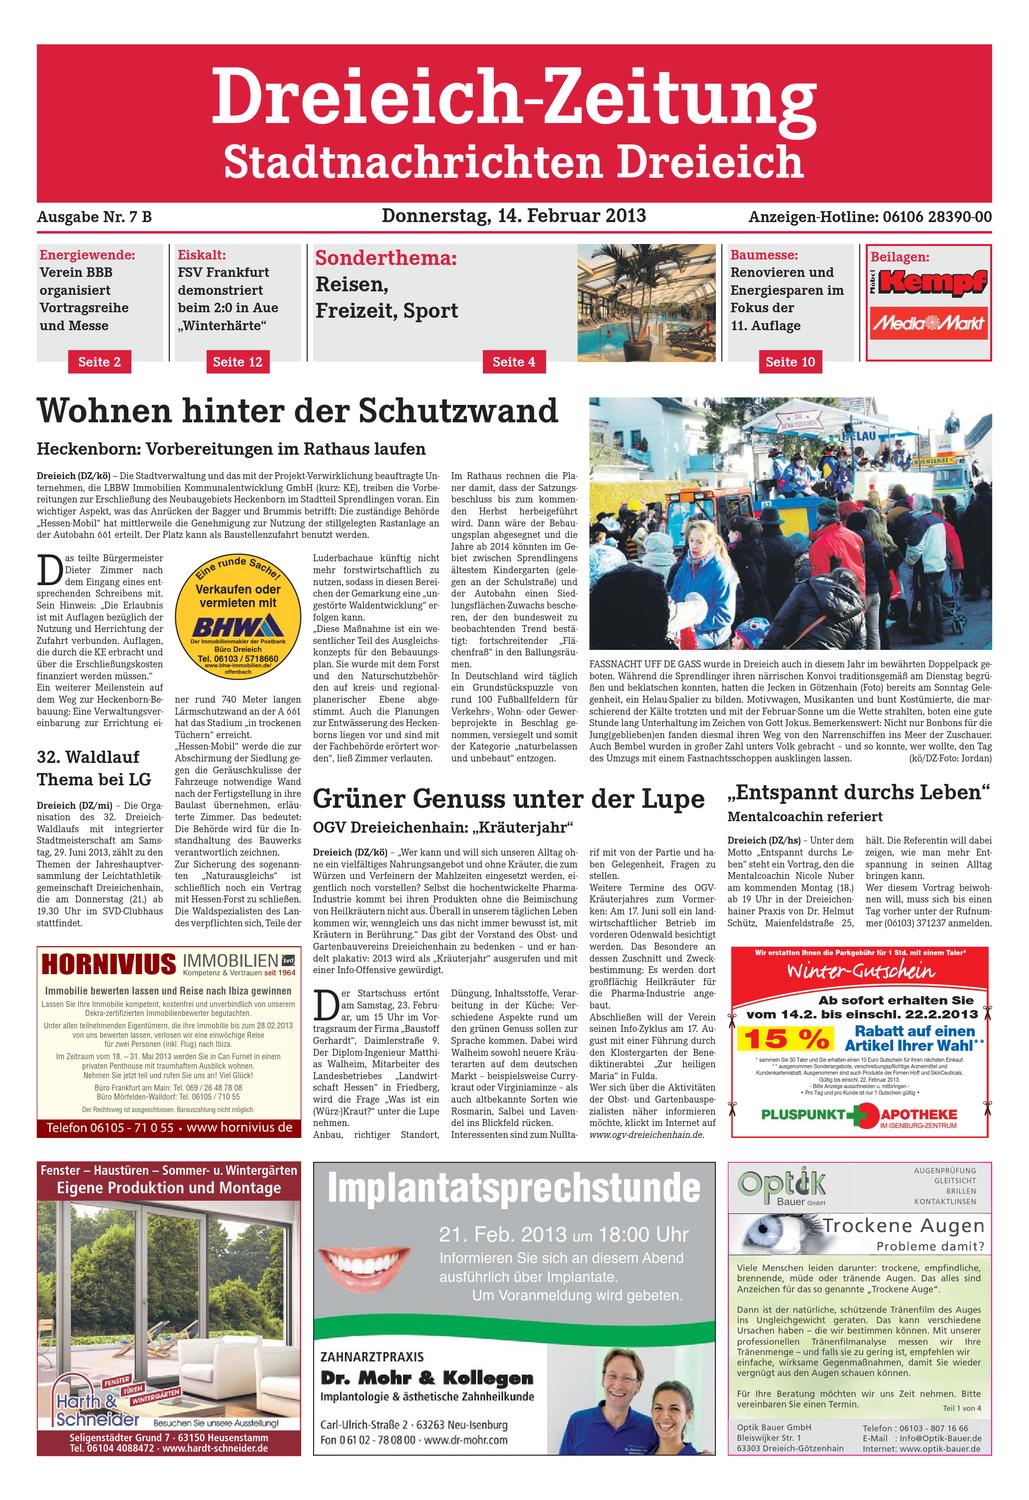 Pilze Im Garten Bestimmen Inspirierend Dz Line 007 13 B by Dreieich Zeitung Fenbach Journal issuu